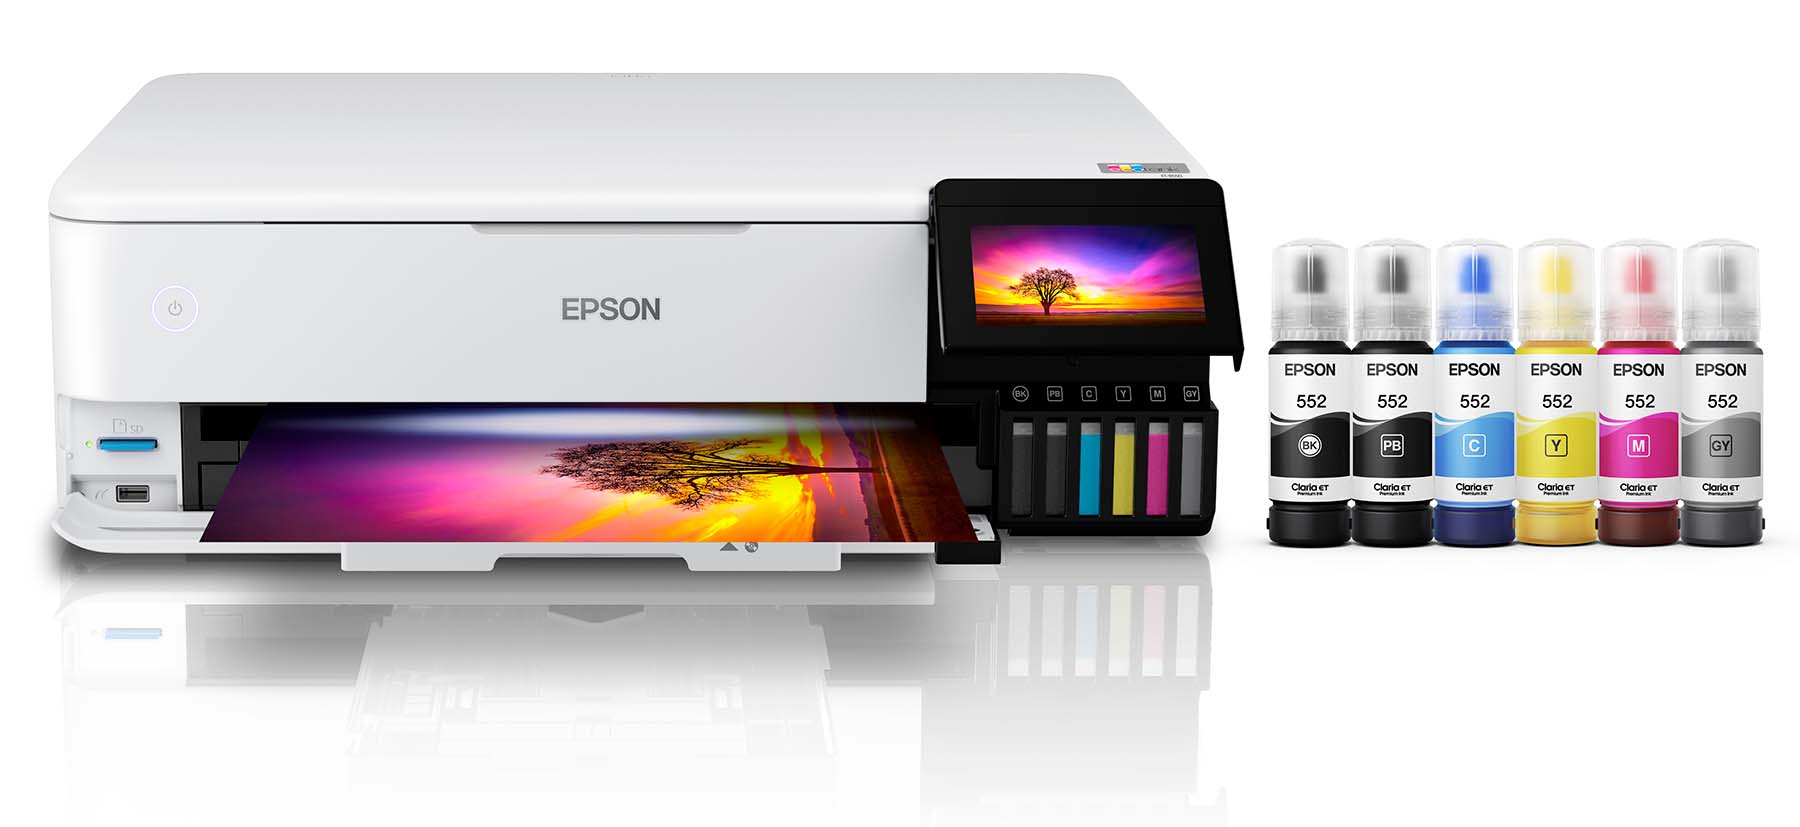 Epson EcoTank ET-8550 printer review